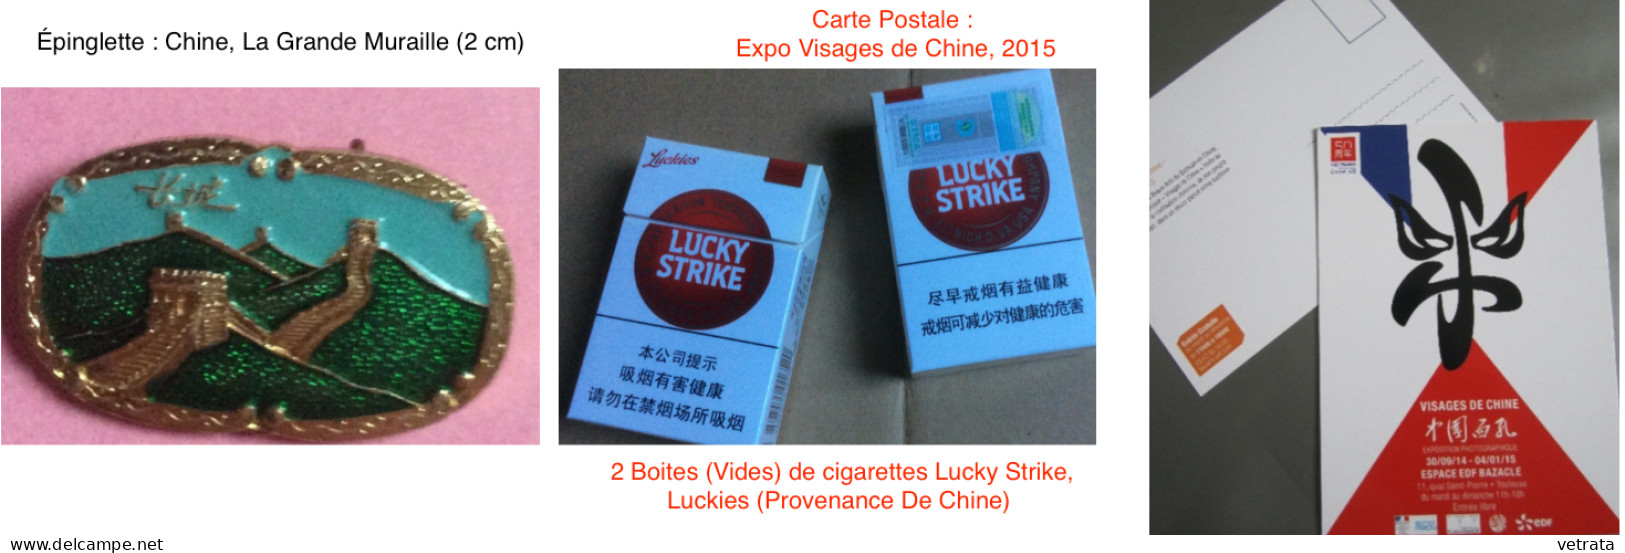 CHINE : 1 Album, 1 guide & 1 revue. CHINE (Larousse-Monde & Voyages-1988) / Guide Hachette Visa : À Pékin & en Chine, 19